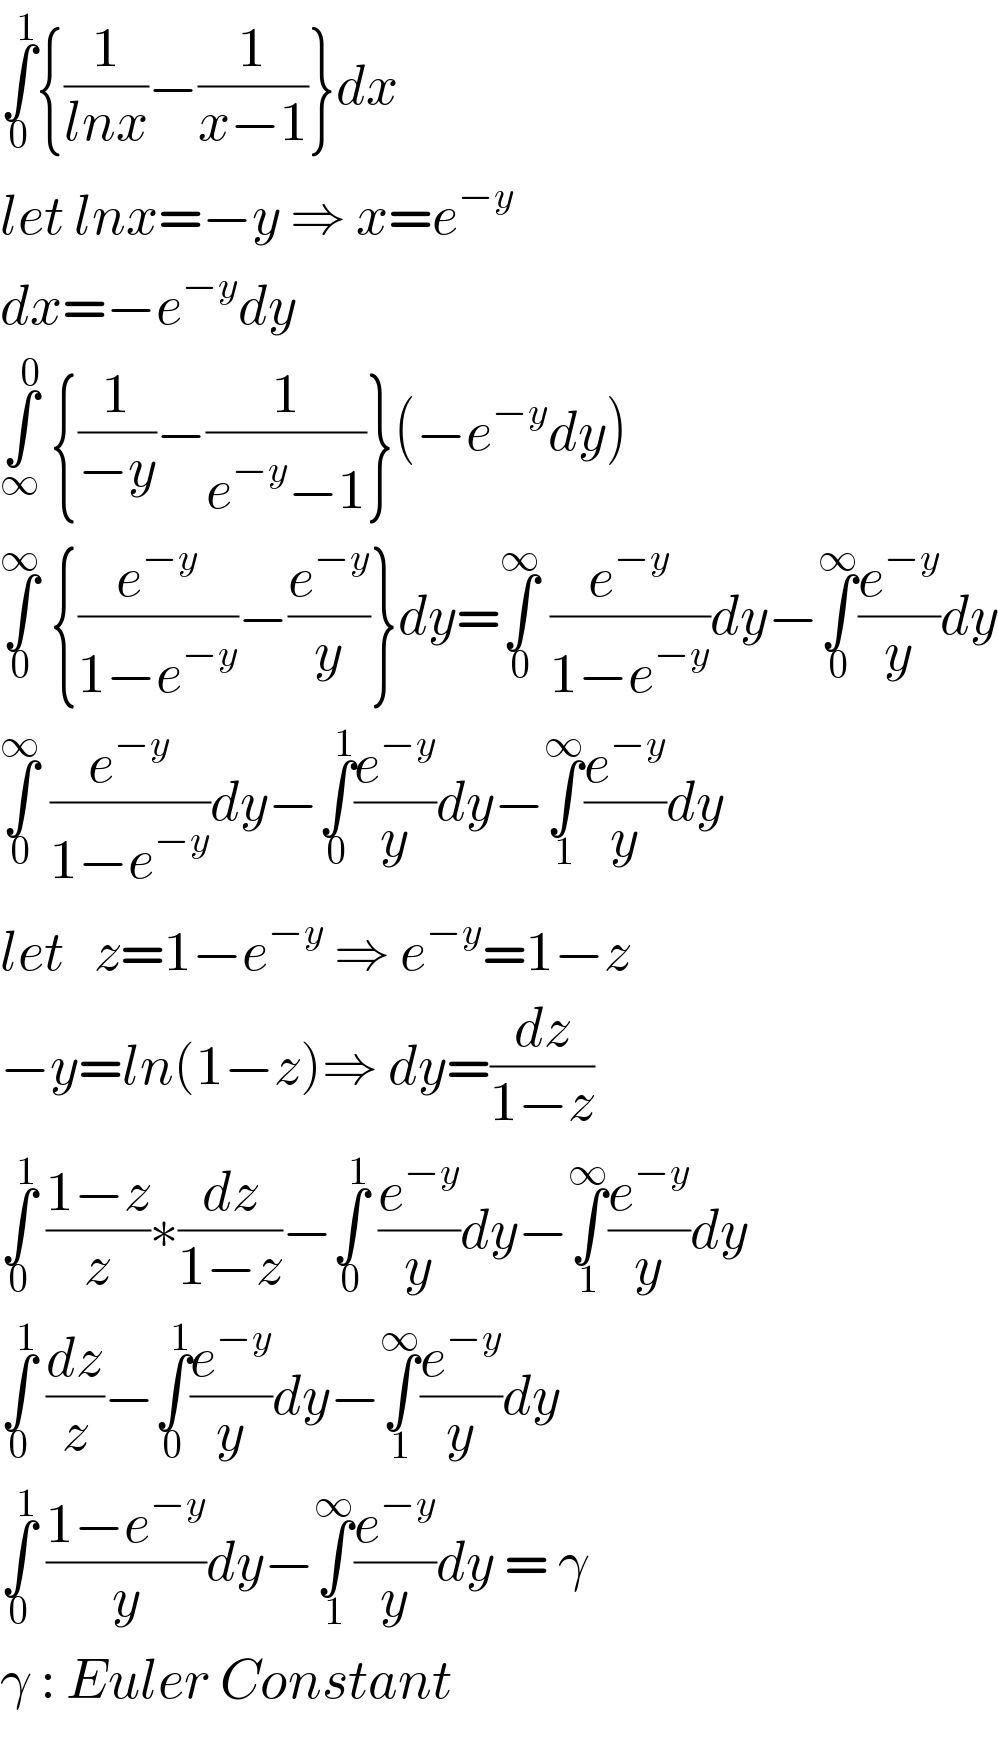 ∫_0 ^1 {(1/(lnx))−(1/(x−1))}dx  let lnx=−y ⇒ x=e^(−y)   dx=−e^(−y) dy  ∫_∞ ^0  {(1/(−y))−(1/(e^(−y) −1))}(−e^(−y) dy)  ∫_0 ^∞  {(e^(−y) /(1−e^(−y) ))−(e^(−y) /y)}dy=∫_0 ^∞  (e^(−y) /(1−e^(−y) ))dy−∫_0 ^∞ (e^(−y) /y)dy  ∫_0 ^∞  (e^(−y) /(1−e^(−y) ))dy−∫_0 ^1 (e^(−y) /y)dy−∫_1 ^∞ (e^(−y) /y)dy  let   z=1−e^(−y)  ⇒ e^(−y) =1−z  −y=ln(1−z)⇒ dy=(dz/(1−z))  ∫_0 ^1  ((1−z)/z)∗(dz/(1−z))−∫_0 ^1  (e^(−y) /y)dy−∫_1 ^∞ (e^(−y) /y)dy  ∫_0 ^1  (dz/z)−∫_0 ^1 (e^(−y) /y)dy−∫_1 ^∞ (e^(−y) /y)dy  ∫_0 ^1  ((1−e^(−y) )/y)dy−∫_1 ^∞ (e^(−y) /y)dy = γ  γ : Euler Constant  